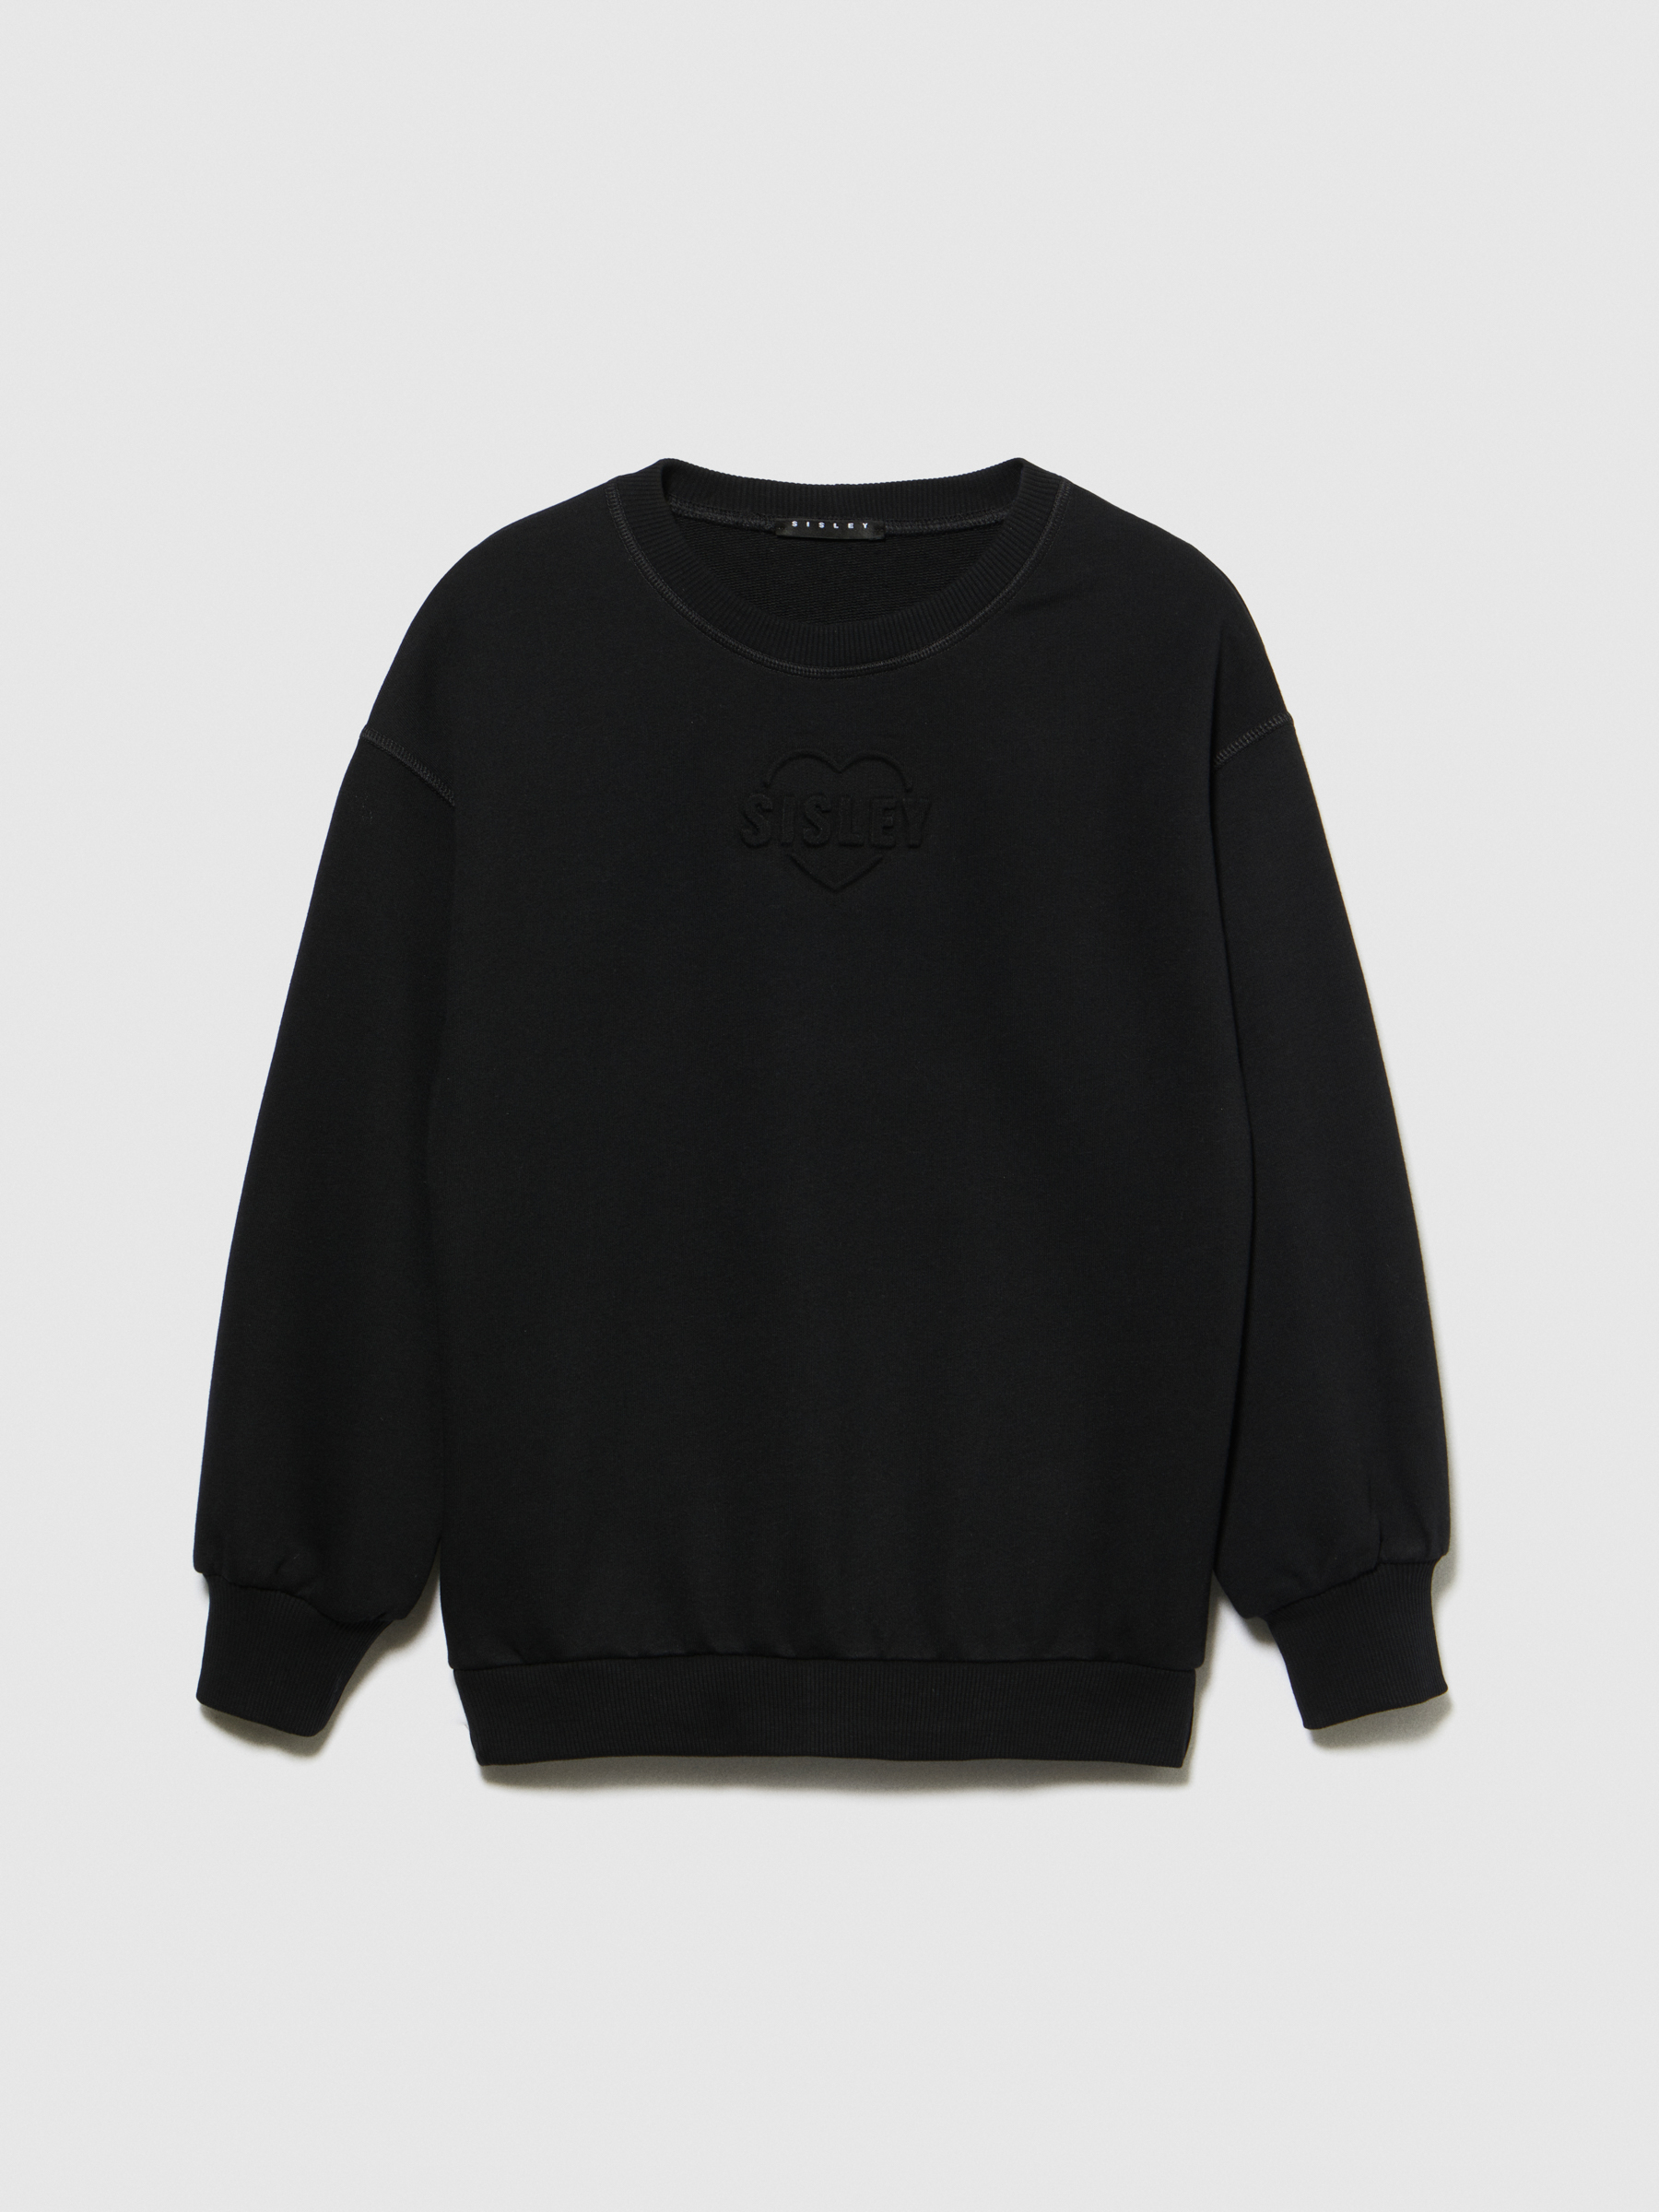 Sisley Young - Sweatshirt With Embossed Print, Woman, Black, Size: KL